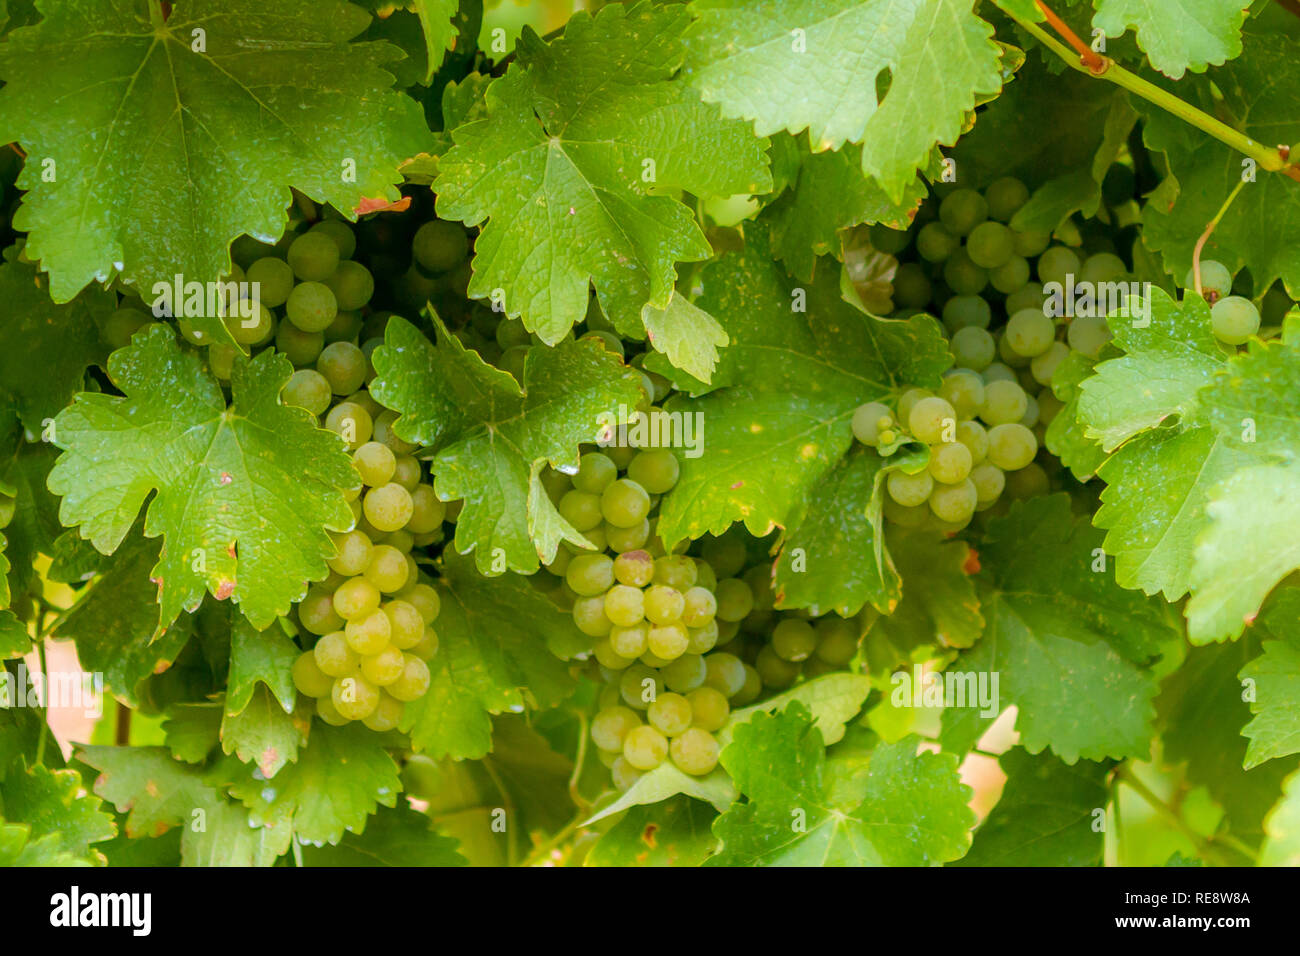 Se cacher à la vue - Sauvignon Blanc raisins de se cacher derrière leurs larges feuilles. Russian River Valley, Sonoma County, Californie, USA Banque D'Images